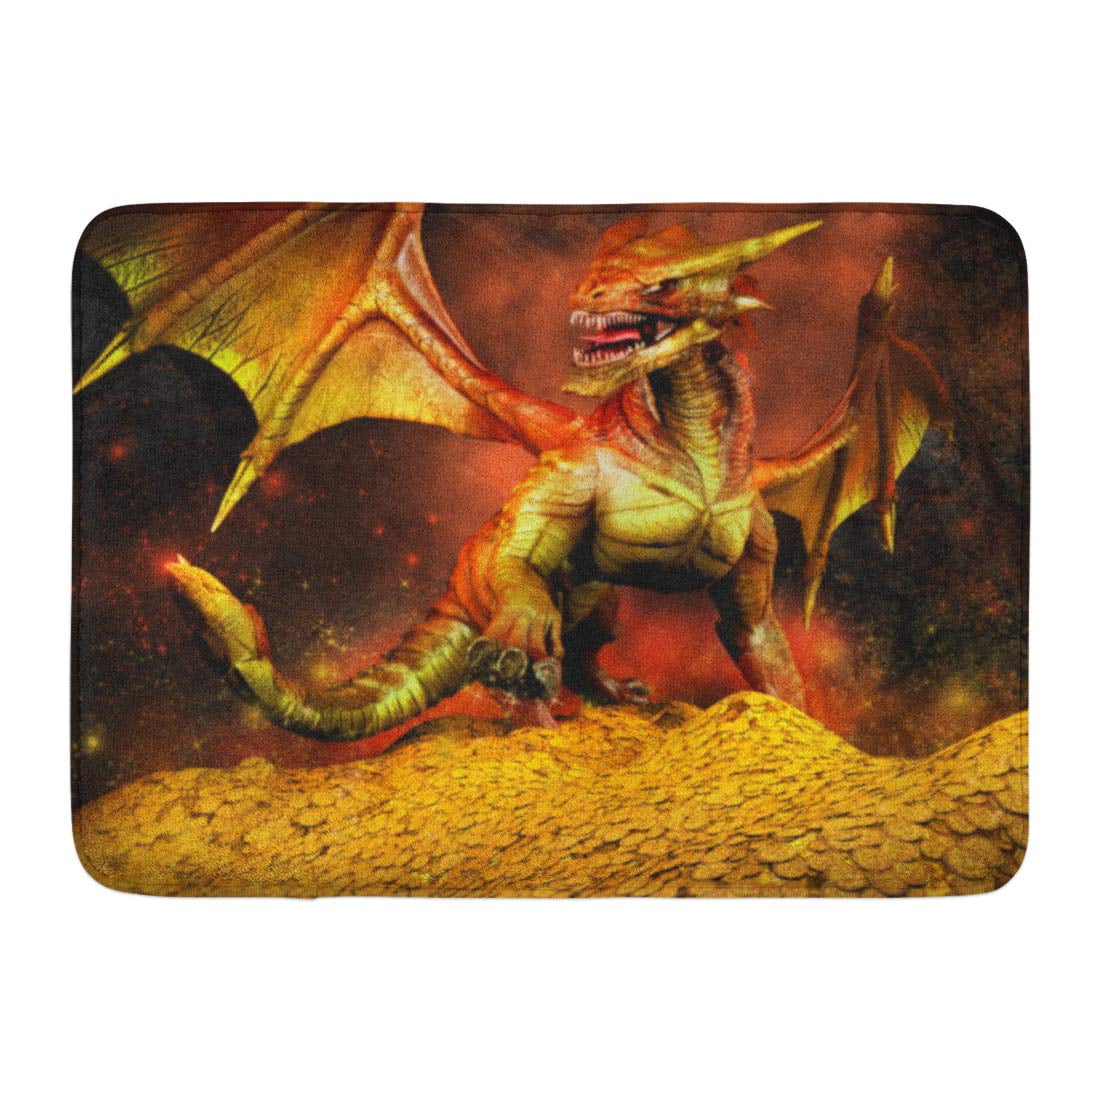 Dragons In Ocean Fantasy Bathroom Decor Rug Non-Slip Floor Front Door Mat 16x24" 